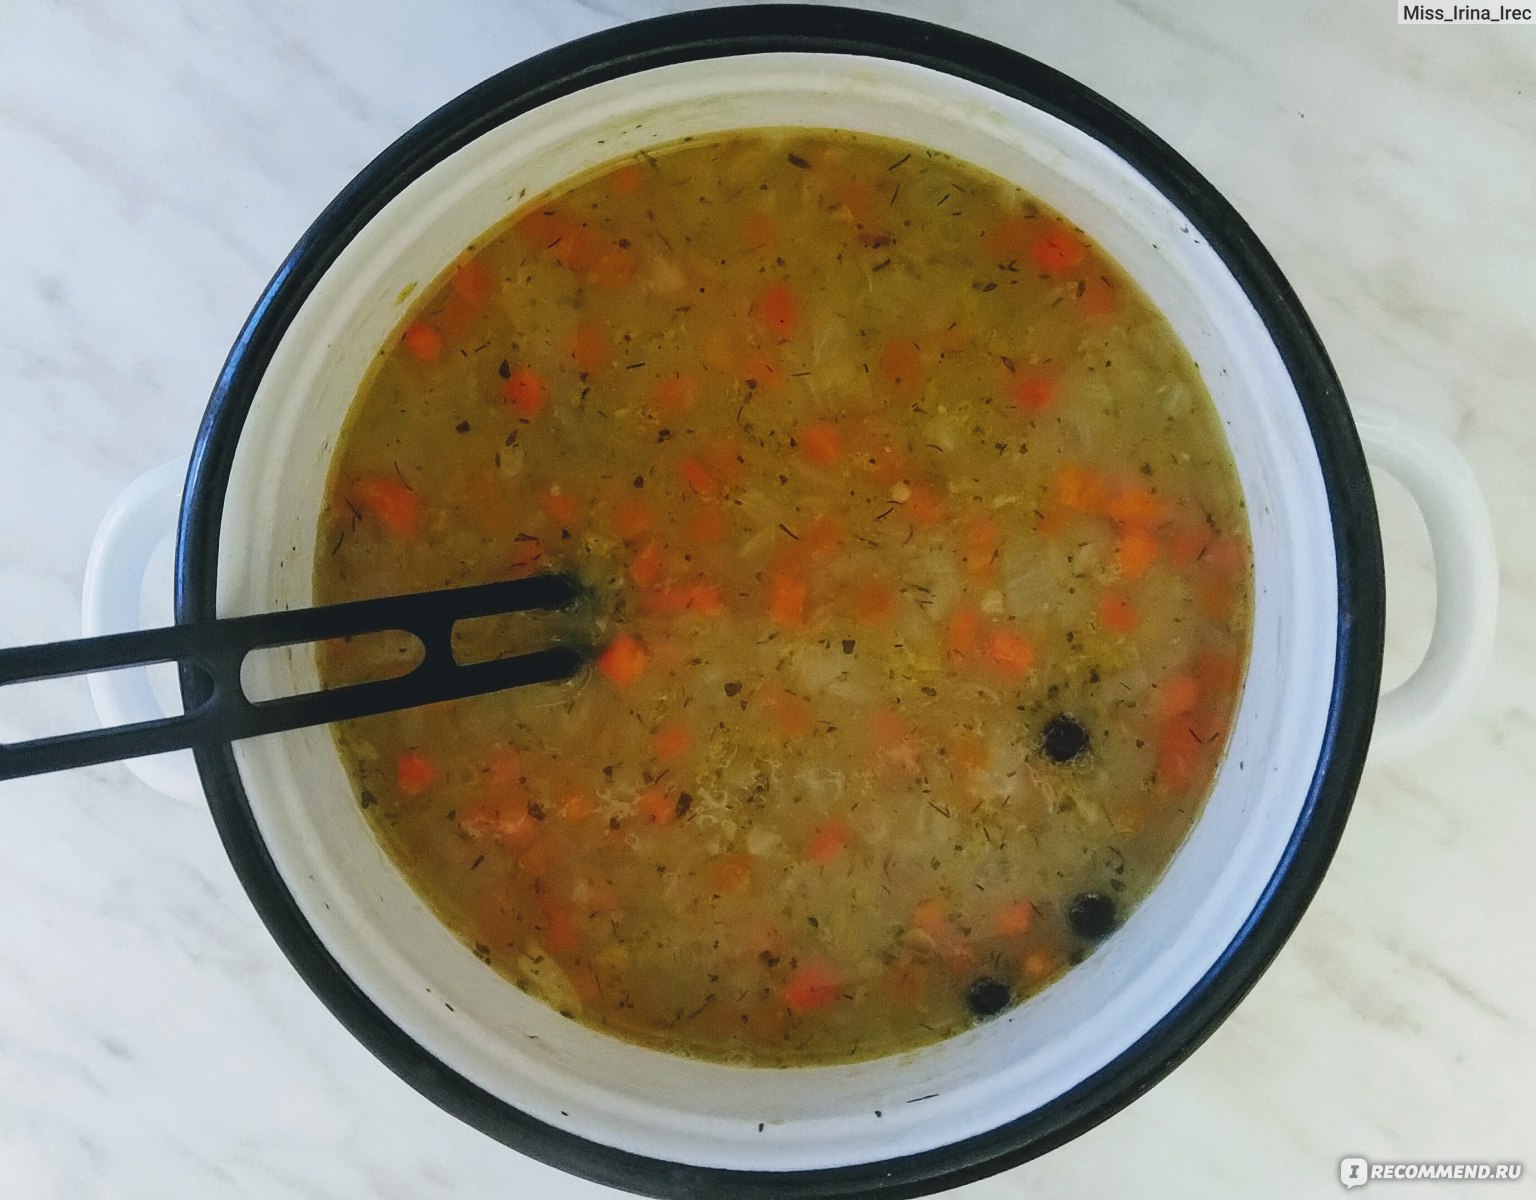 Гороховый суп - Рецепт с пошаговыми фотографиями - hb-crm.ru